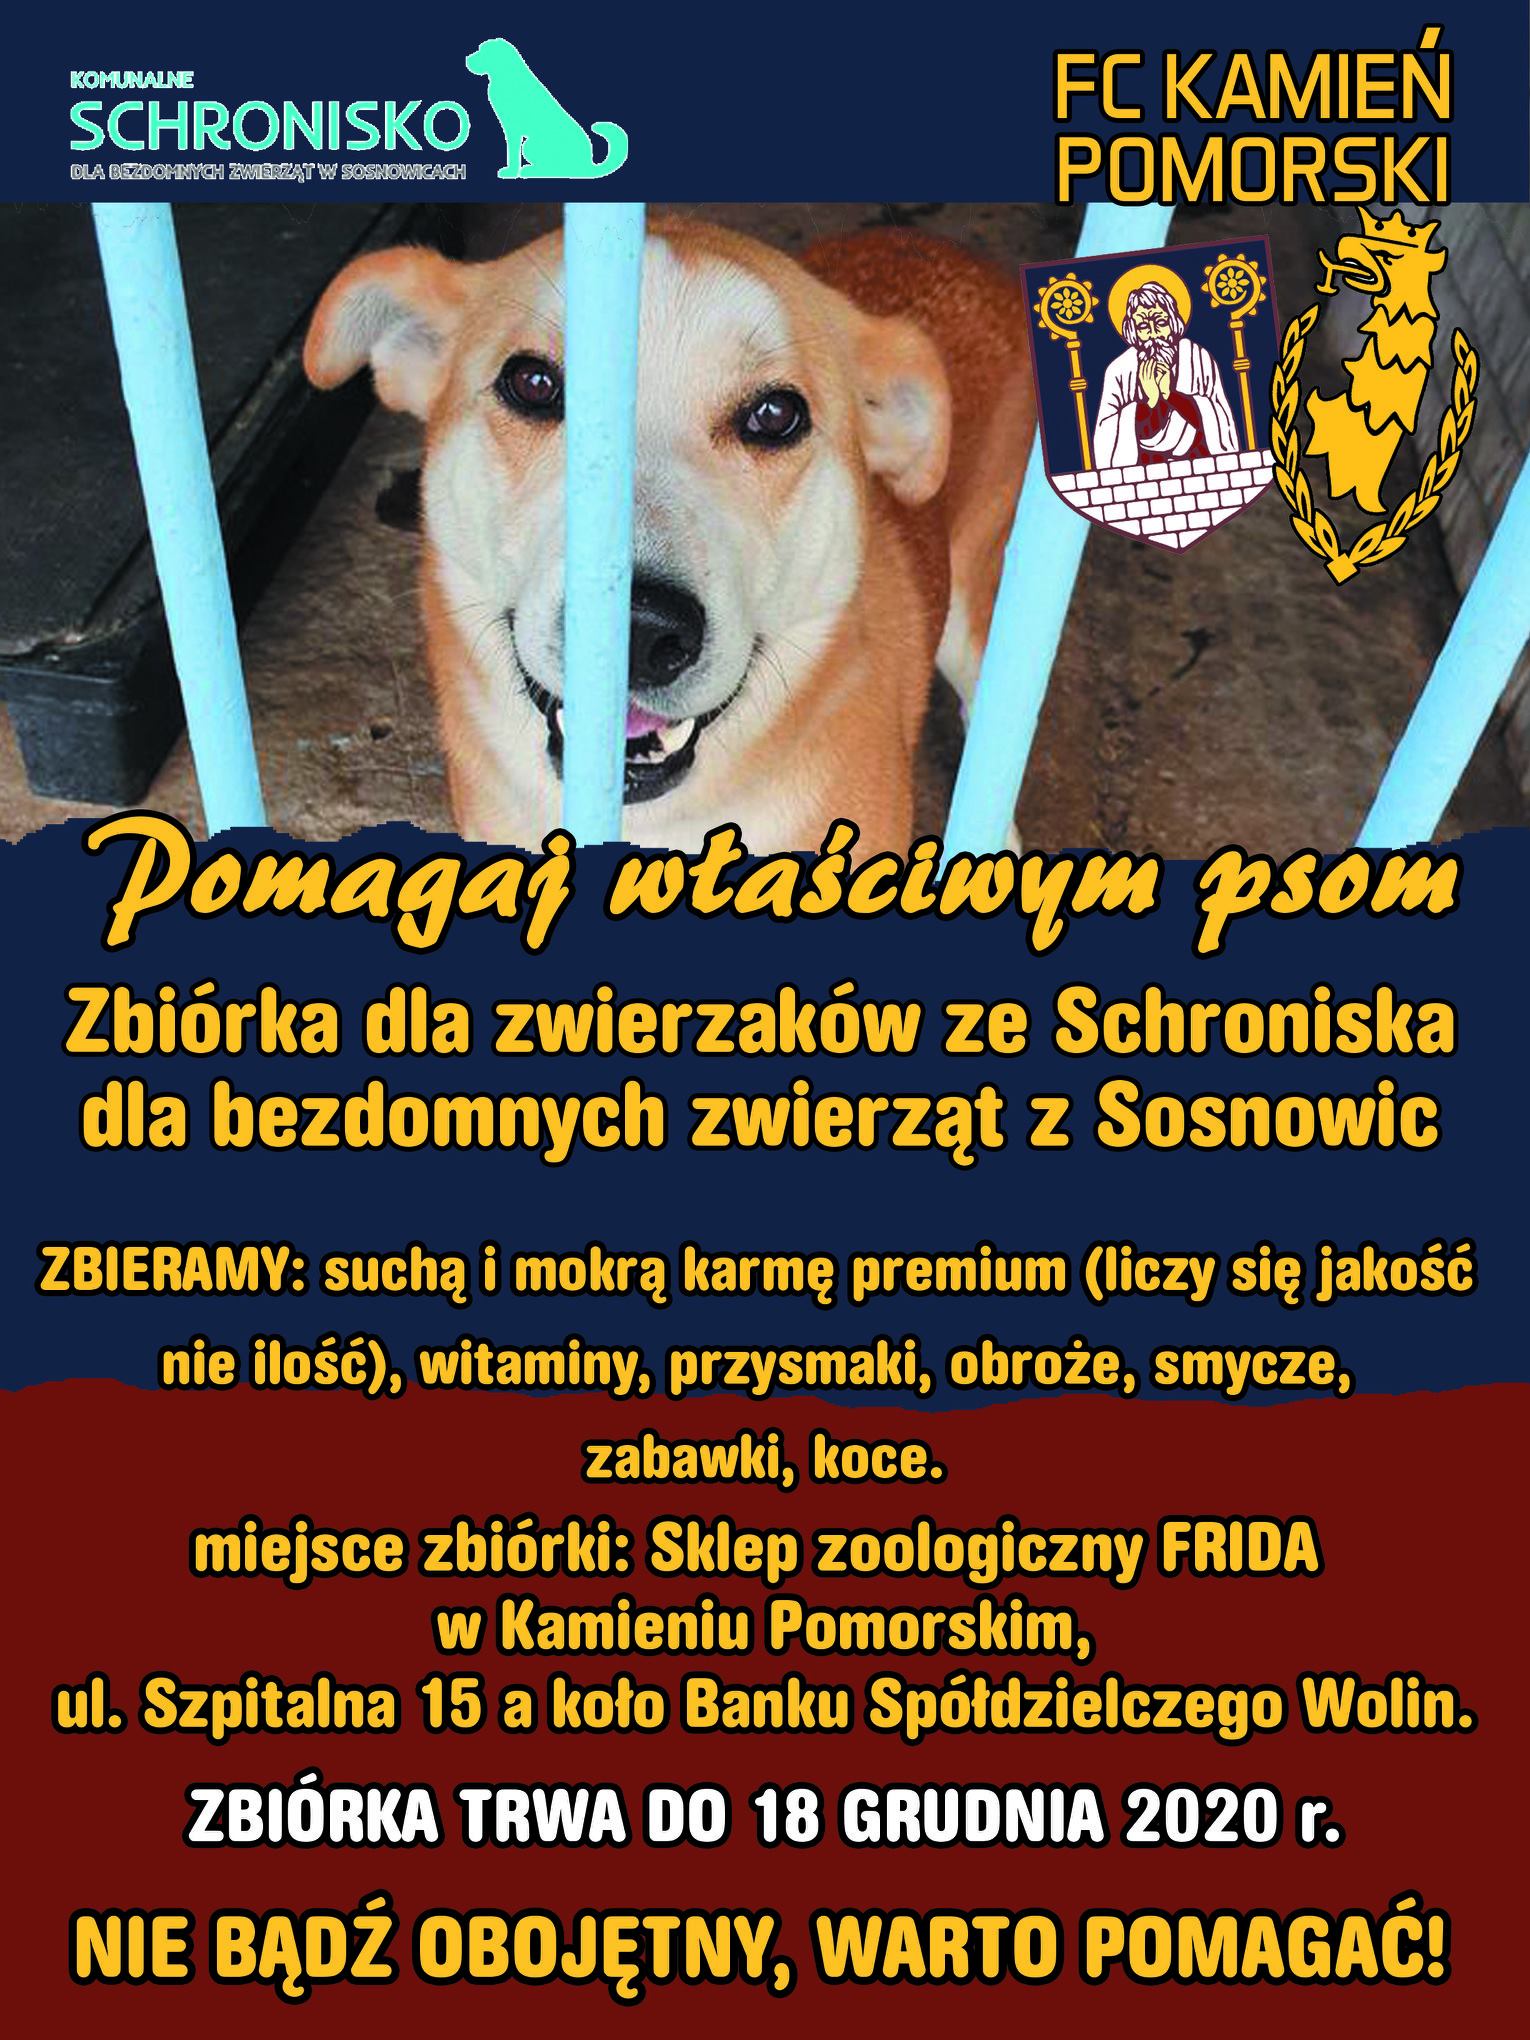 Trwa zbiórka na rzecz Schroniska dla Bezdomnych Zwierząt w Sosnowicach